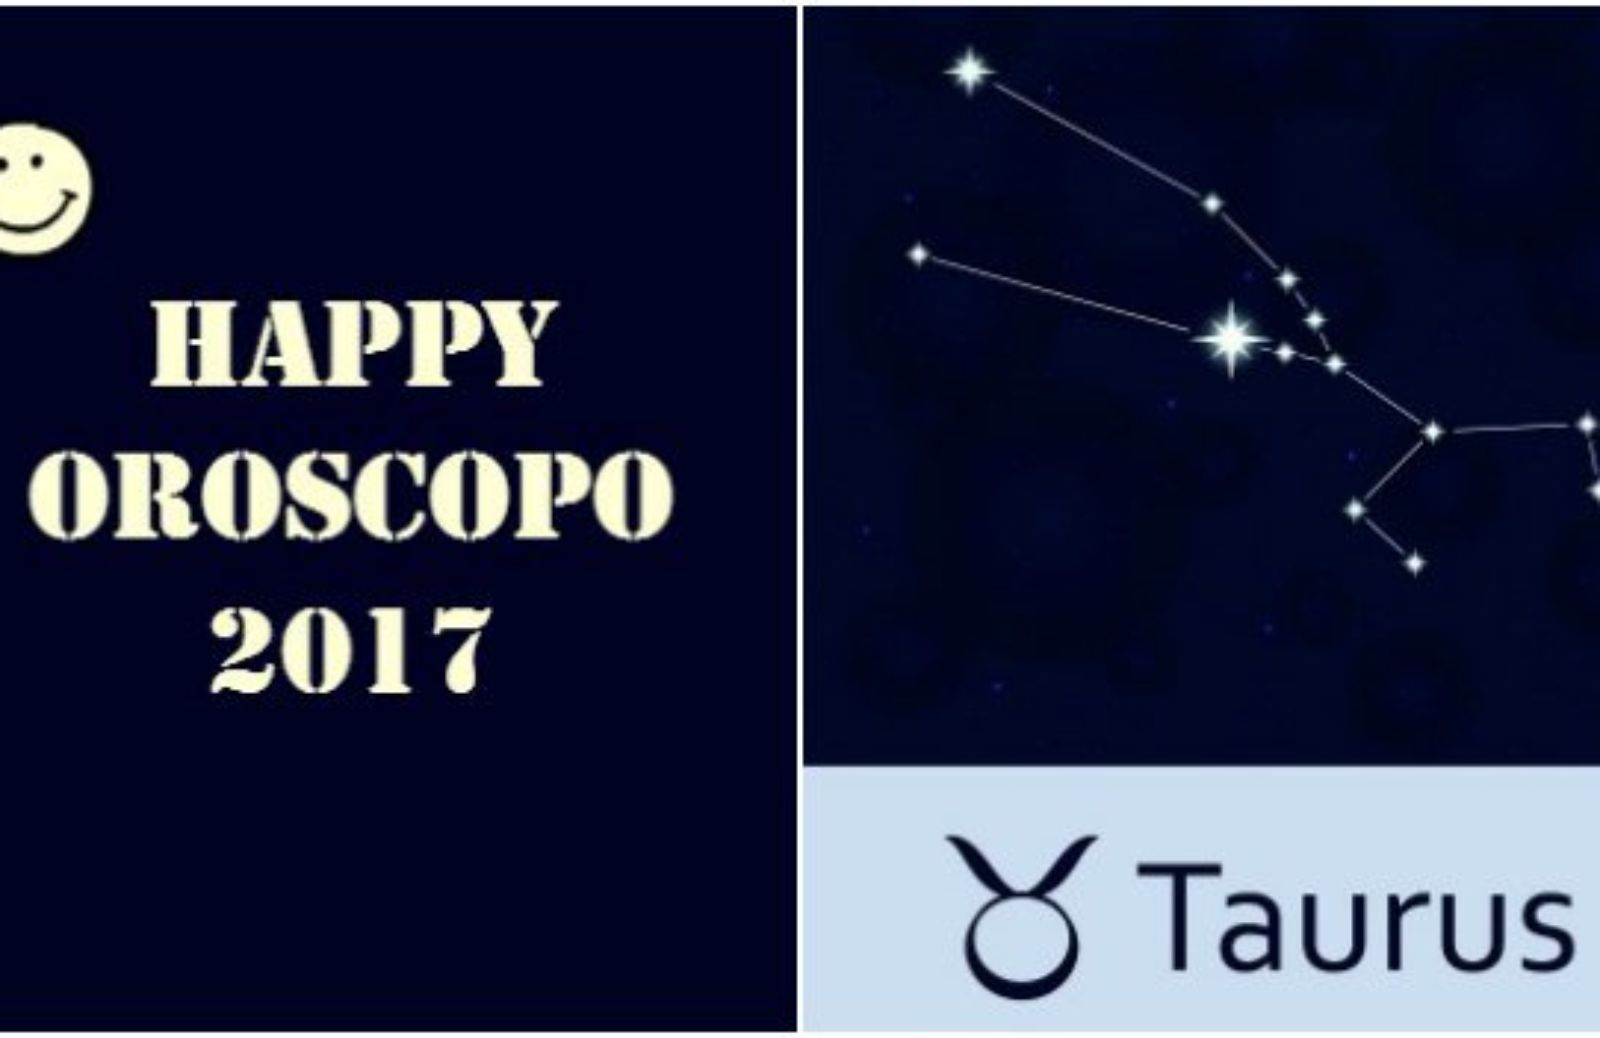 Happy Oroscopo 2017: il segno del Toro